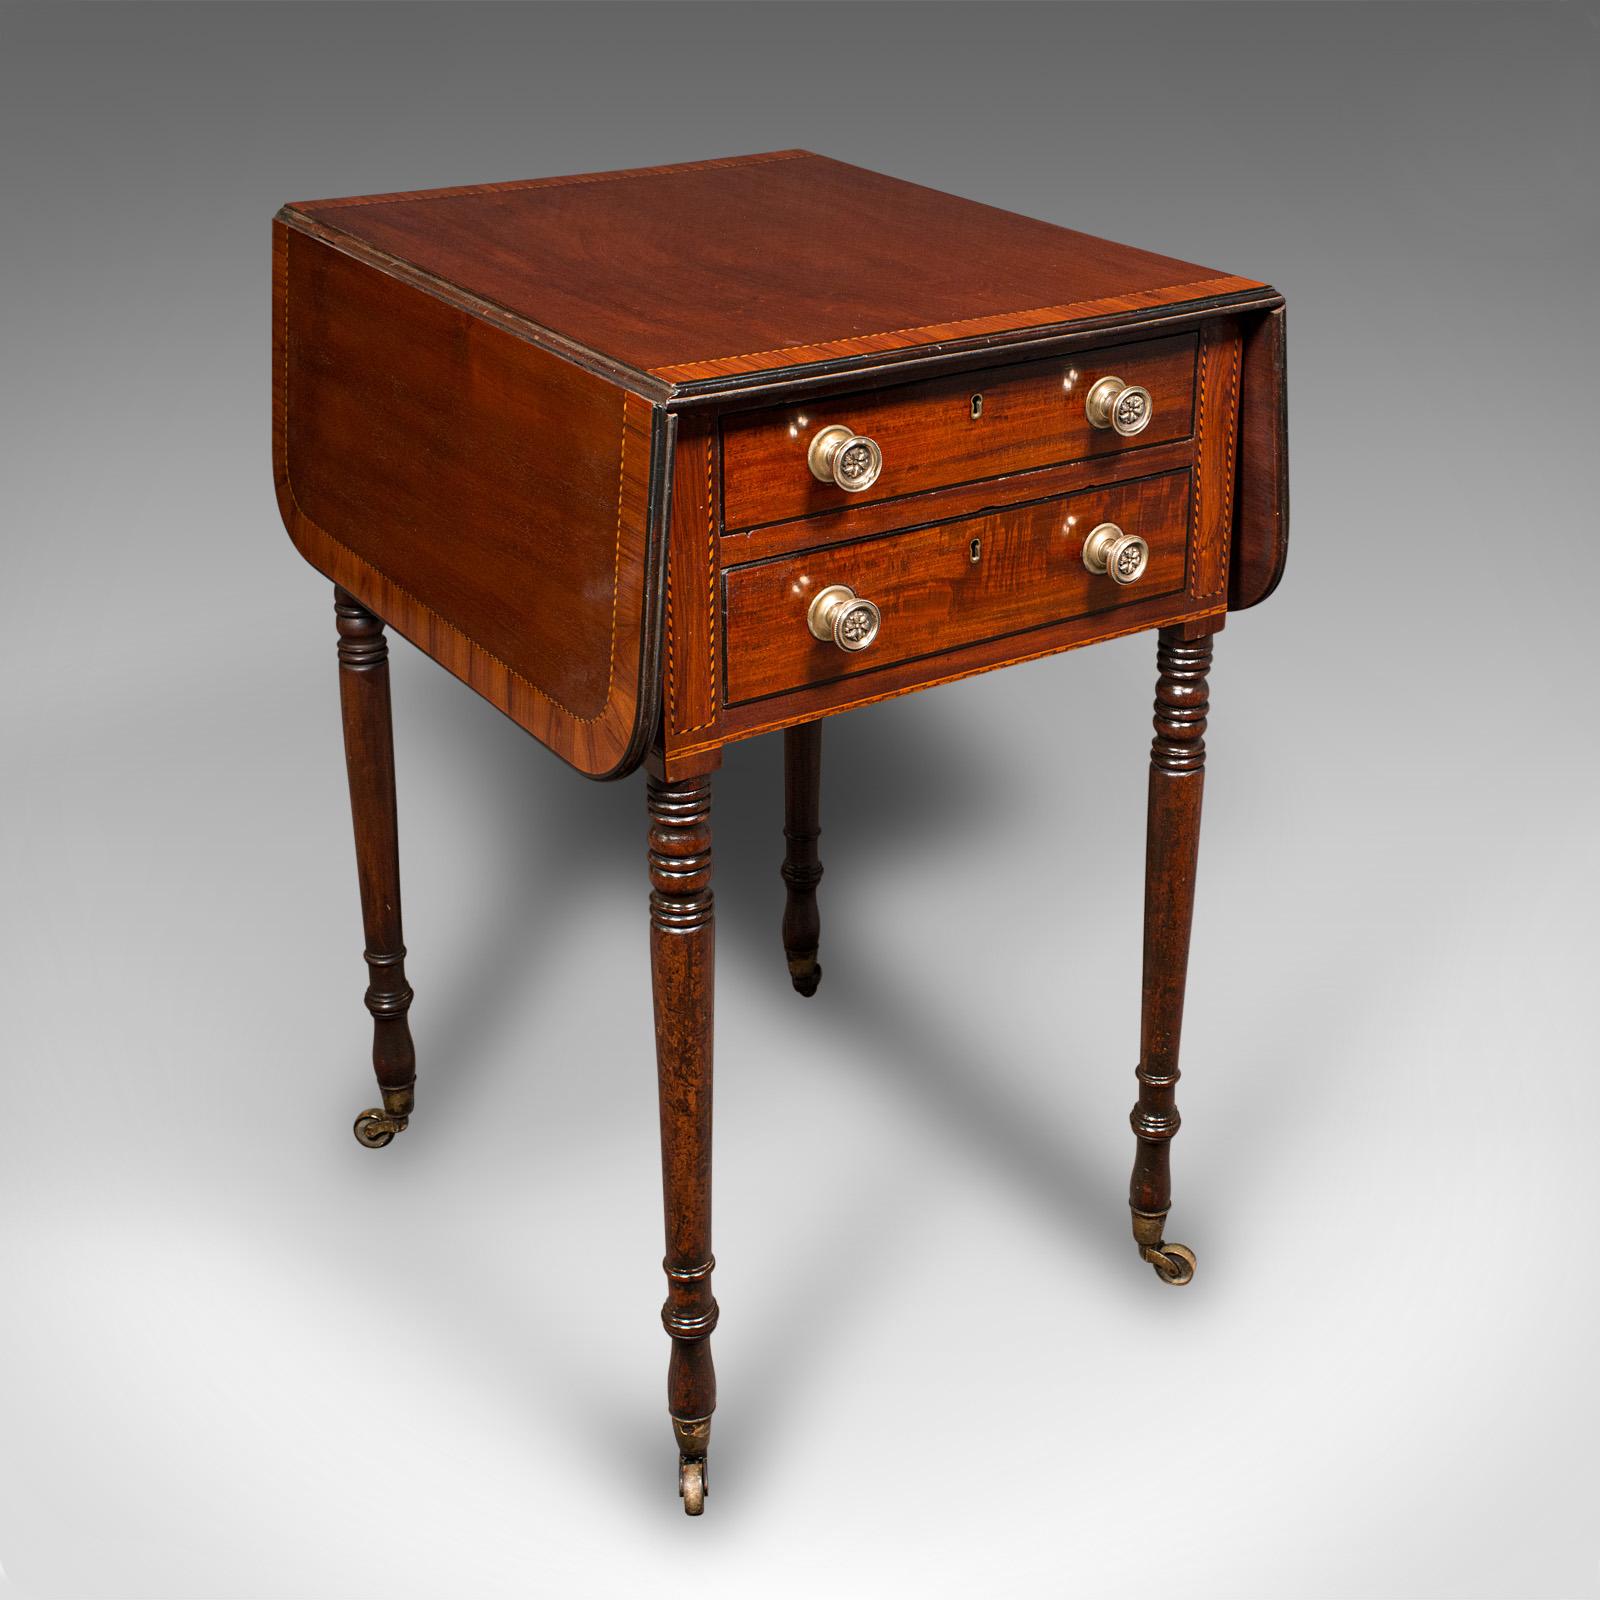 Il s'agit d'une ancienne table de salon Pembroke. Table d'appoint ou de lampe en acajou, datant de la période Regency, vers 1820.

Petite table magnifiquement présentée, avec de belles couleurs et une belle qualité d'exécution
Présente une patine